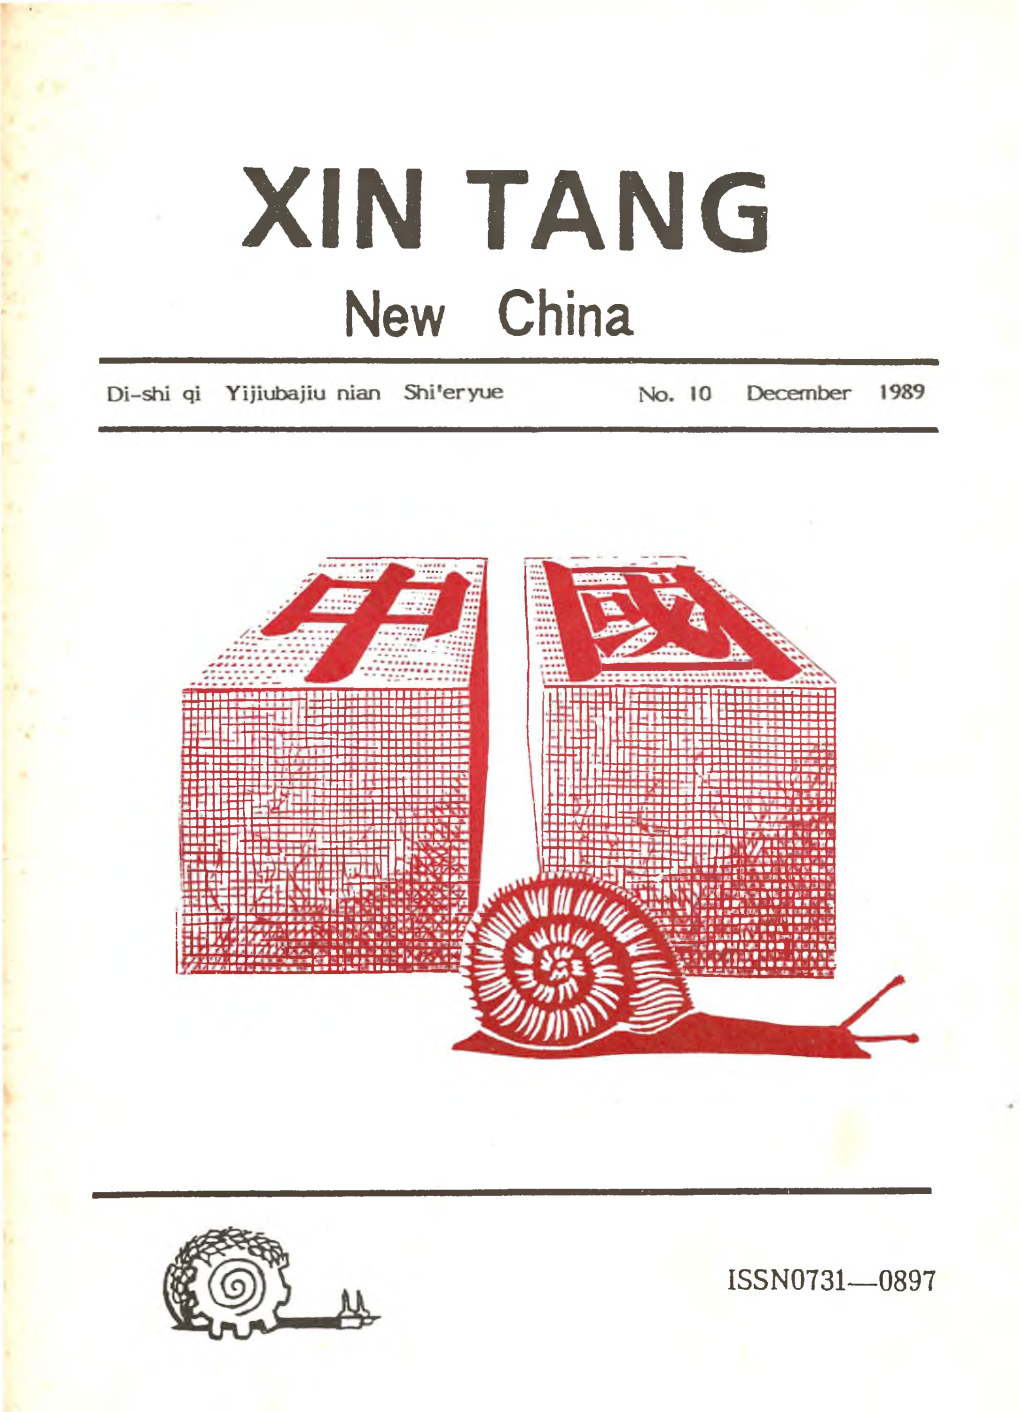 Xin Tang (New China)